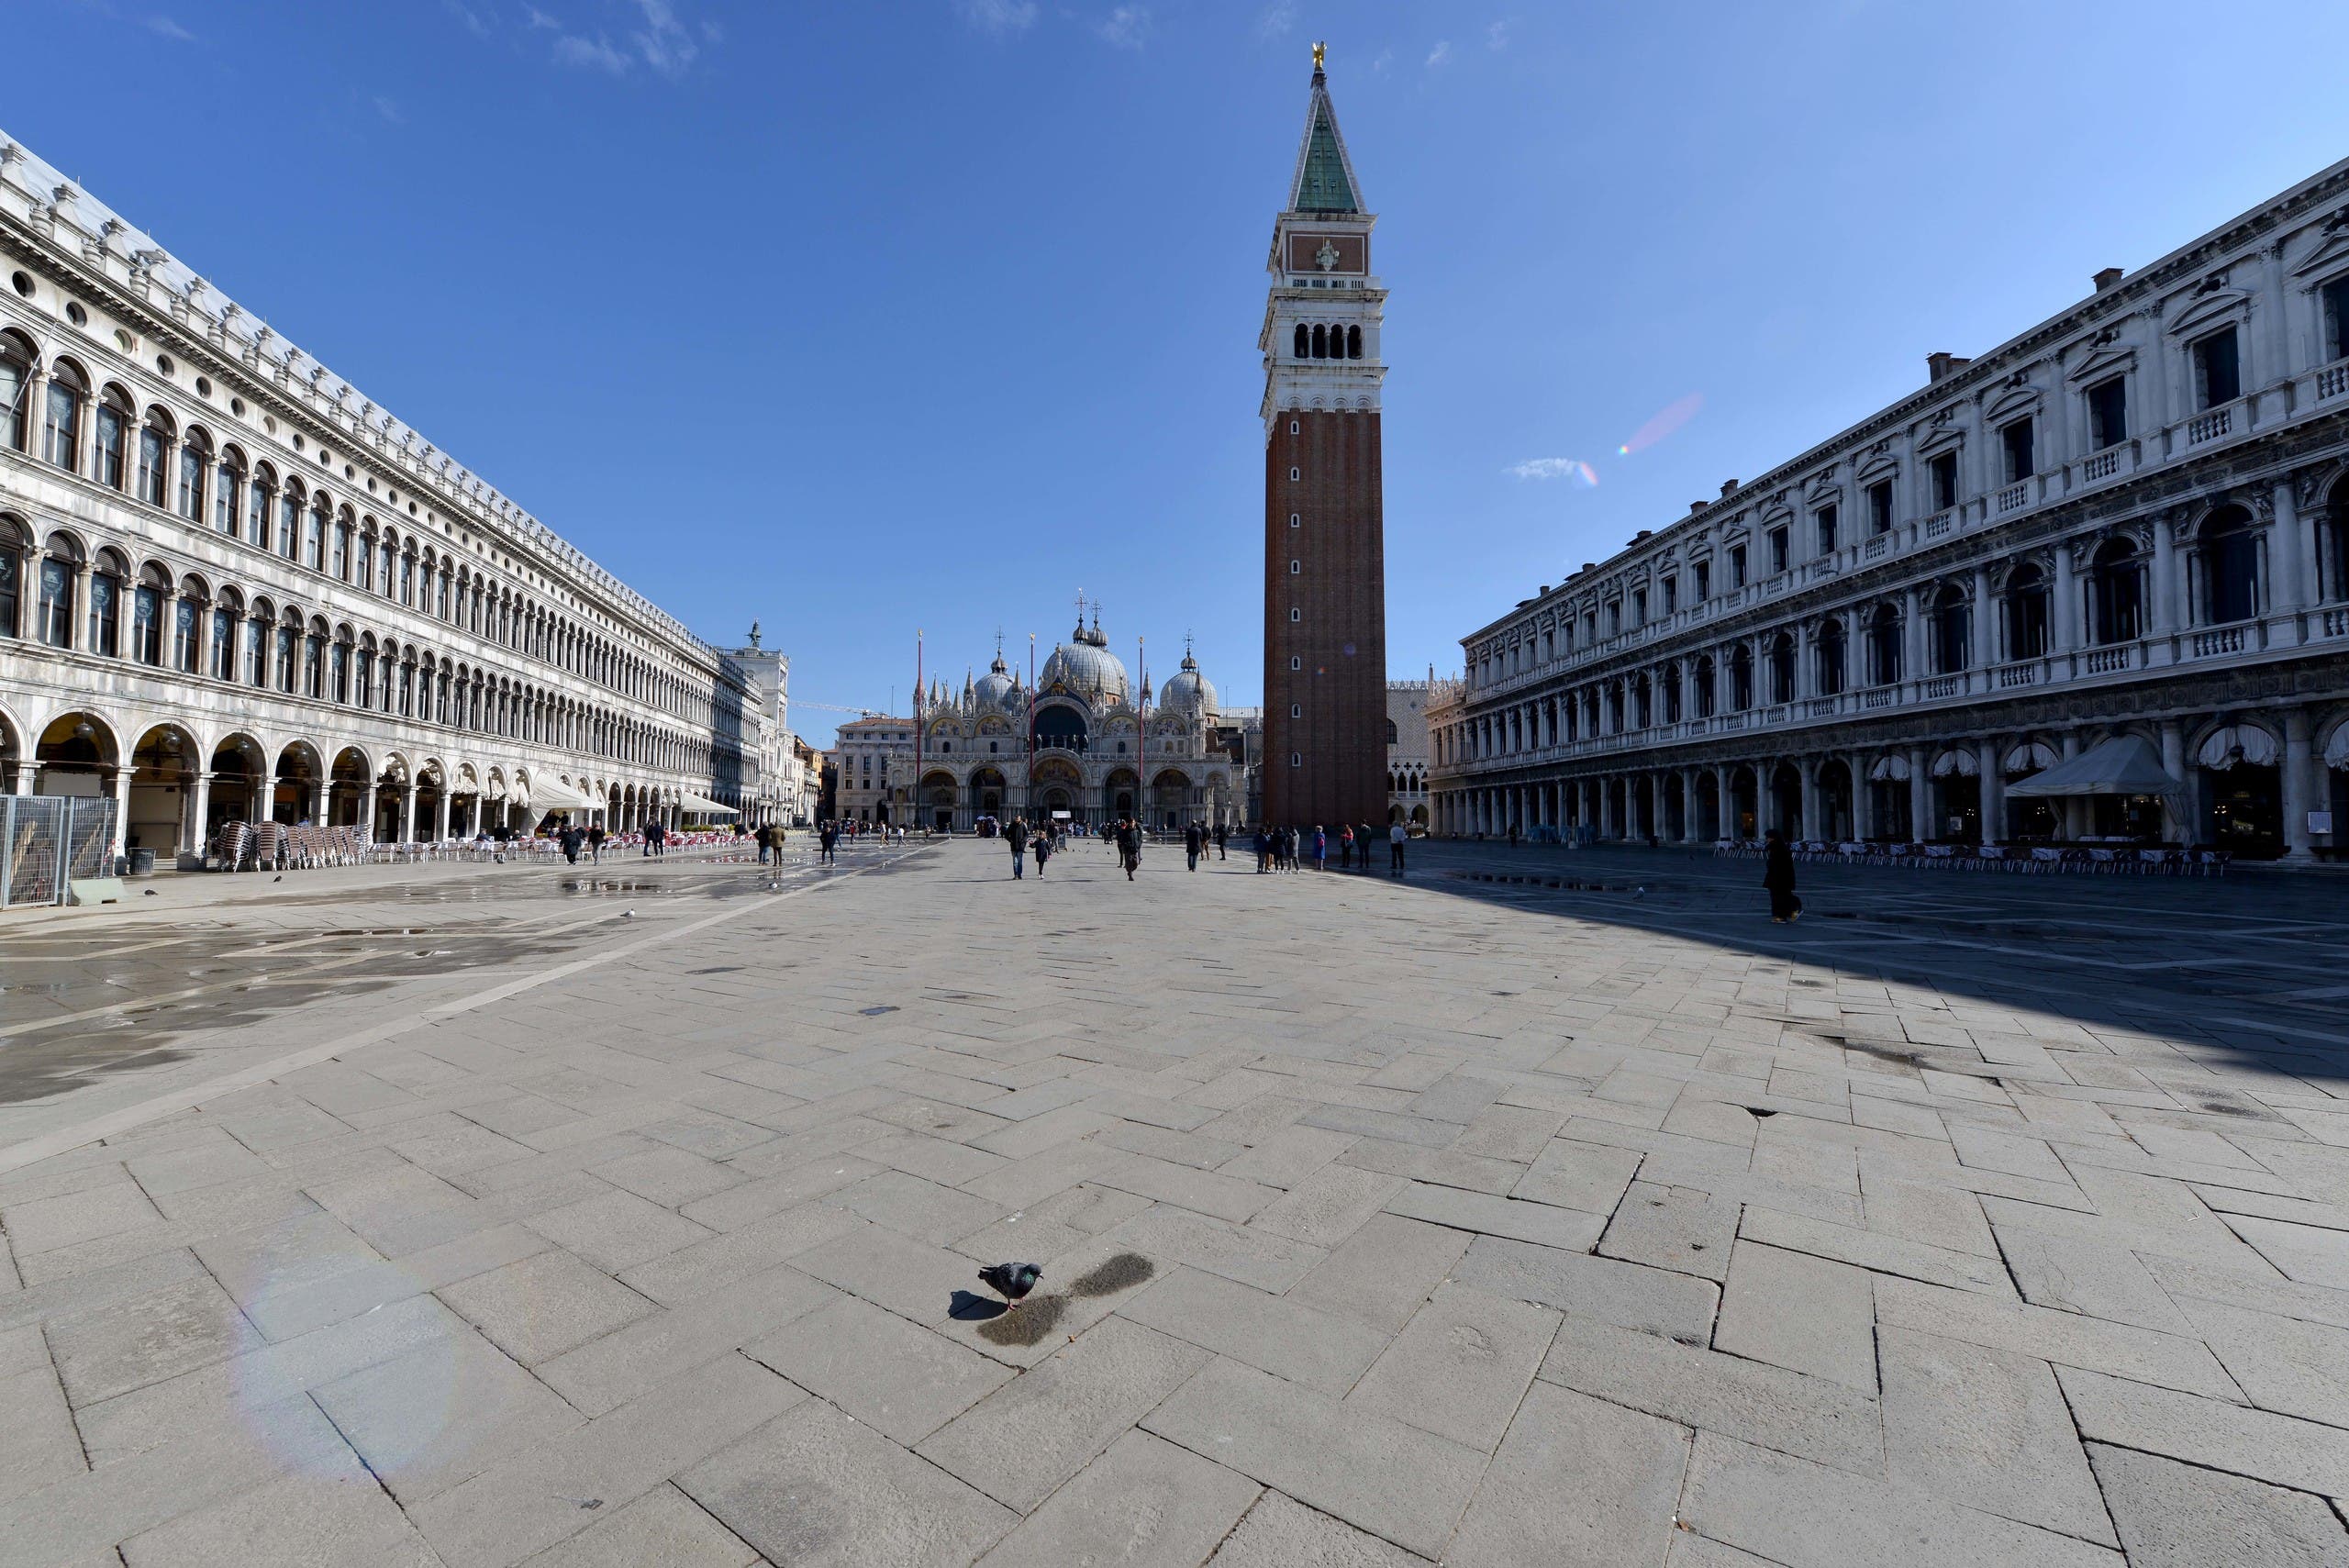 Het belangrijkste plein van San Marco in de stad was afgelopen maart leeg vanwege Corona